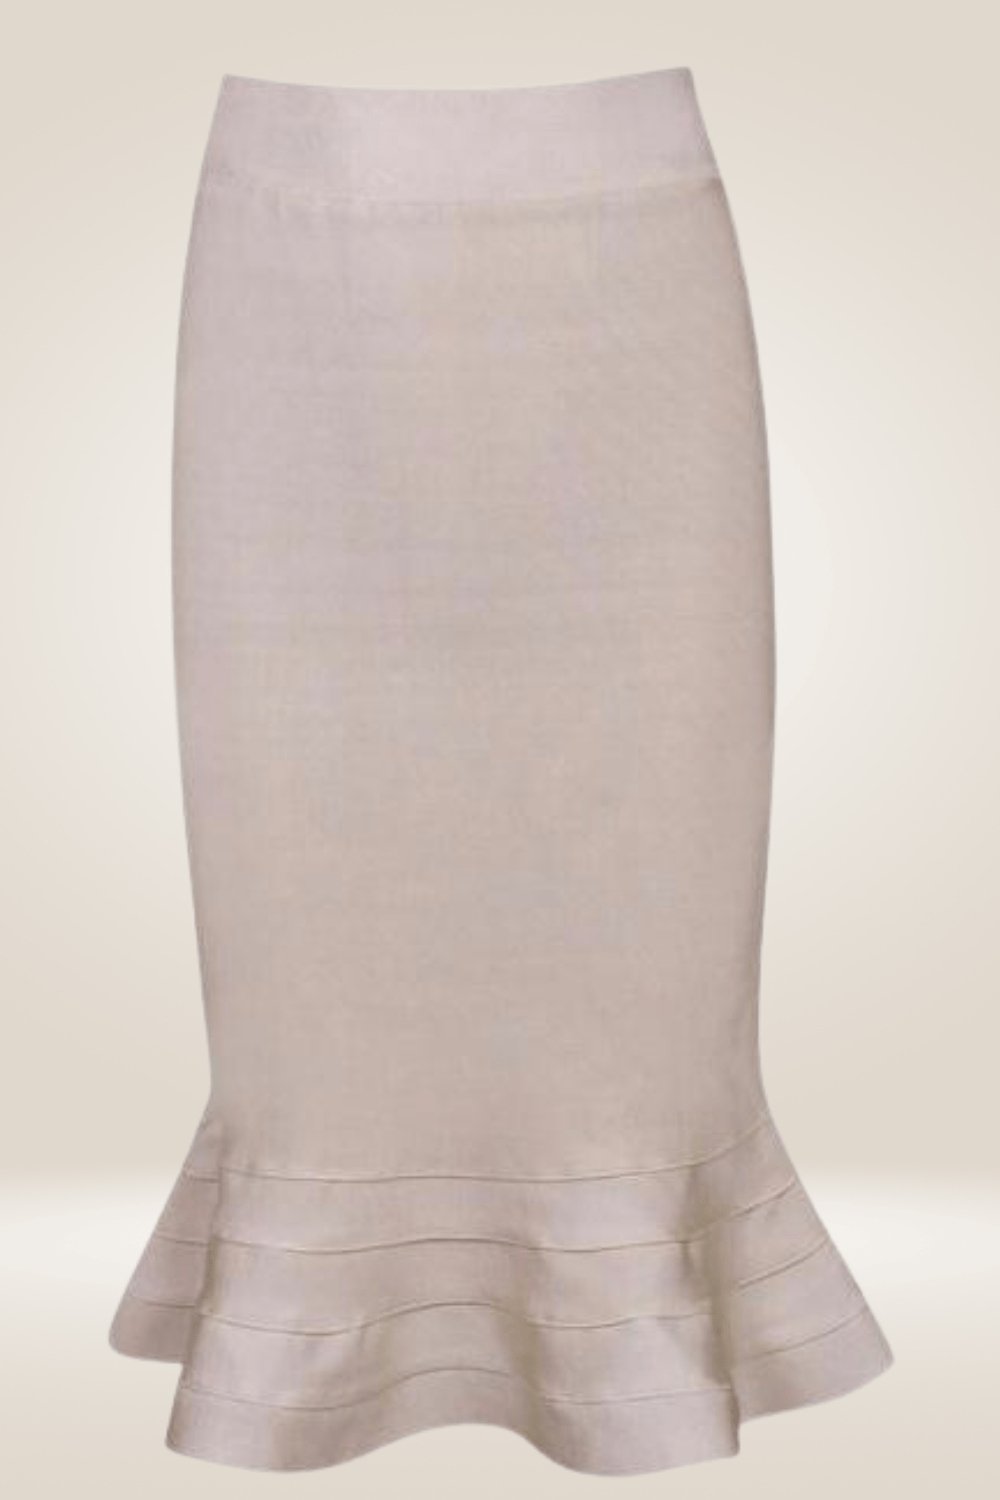 Bodycon Mermaid Ruffle Midi Skirt - TGC Boutique - Bodycon skirt